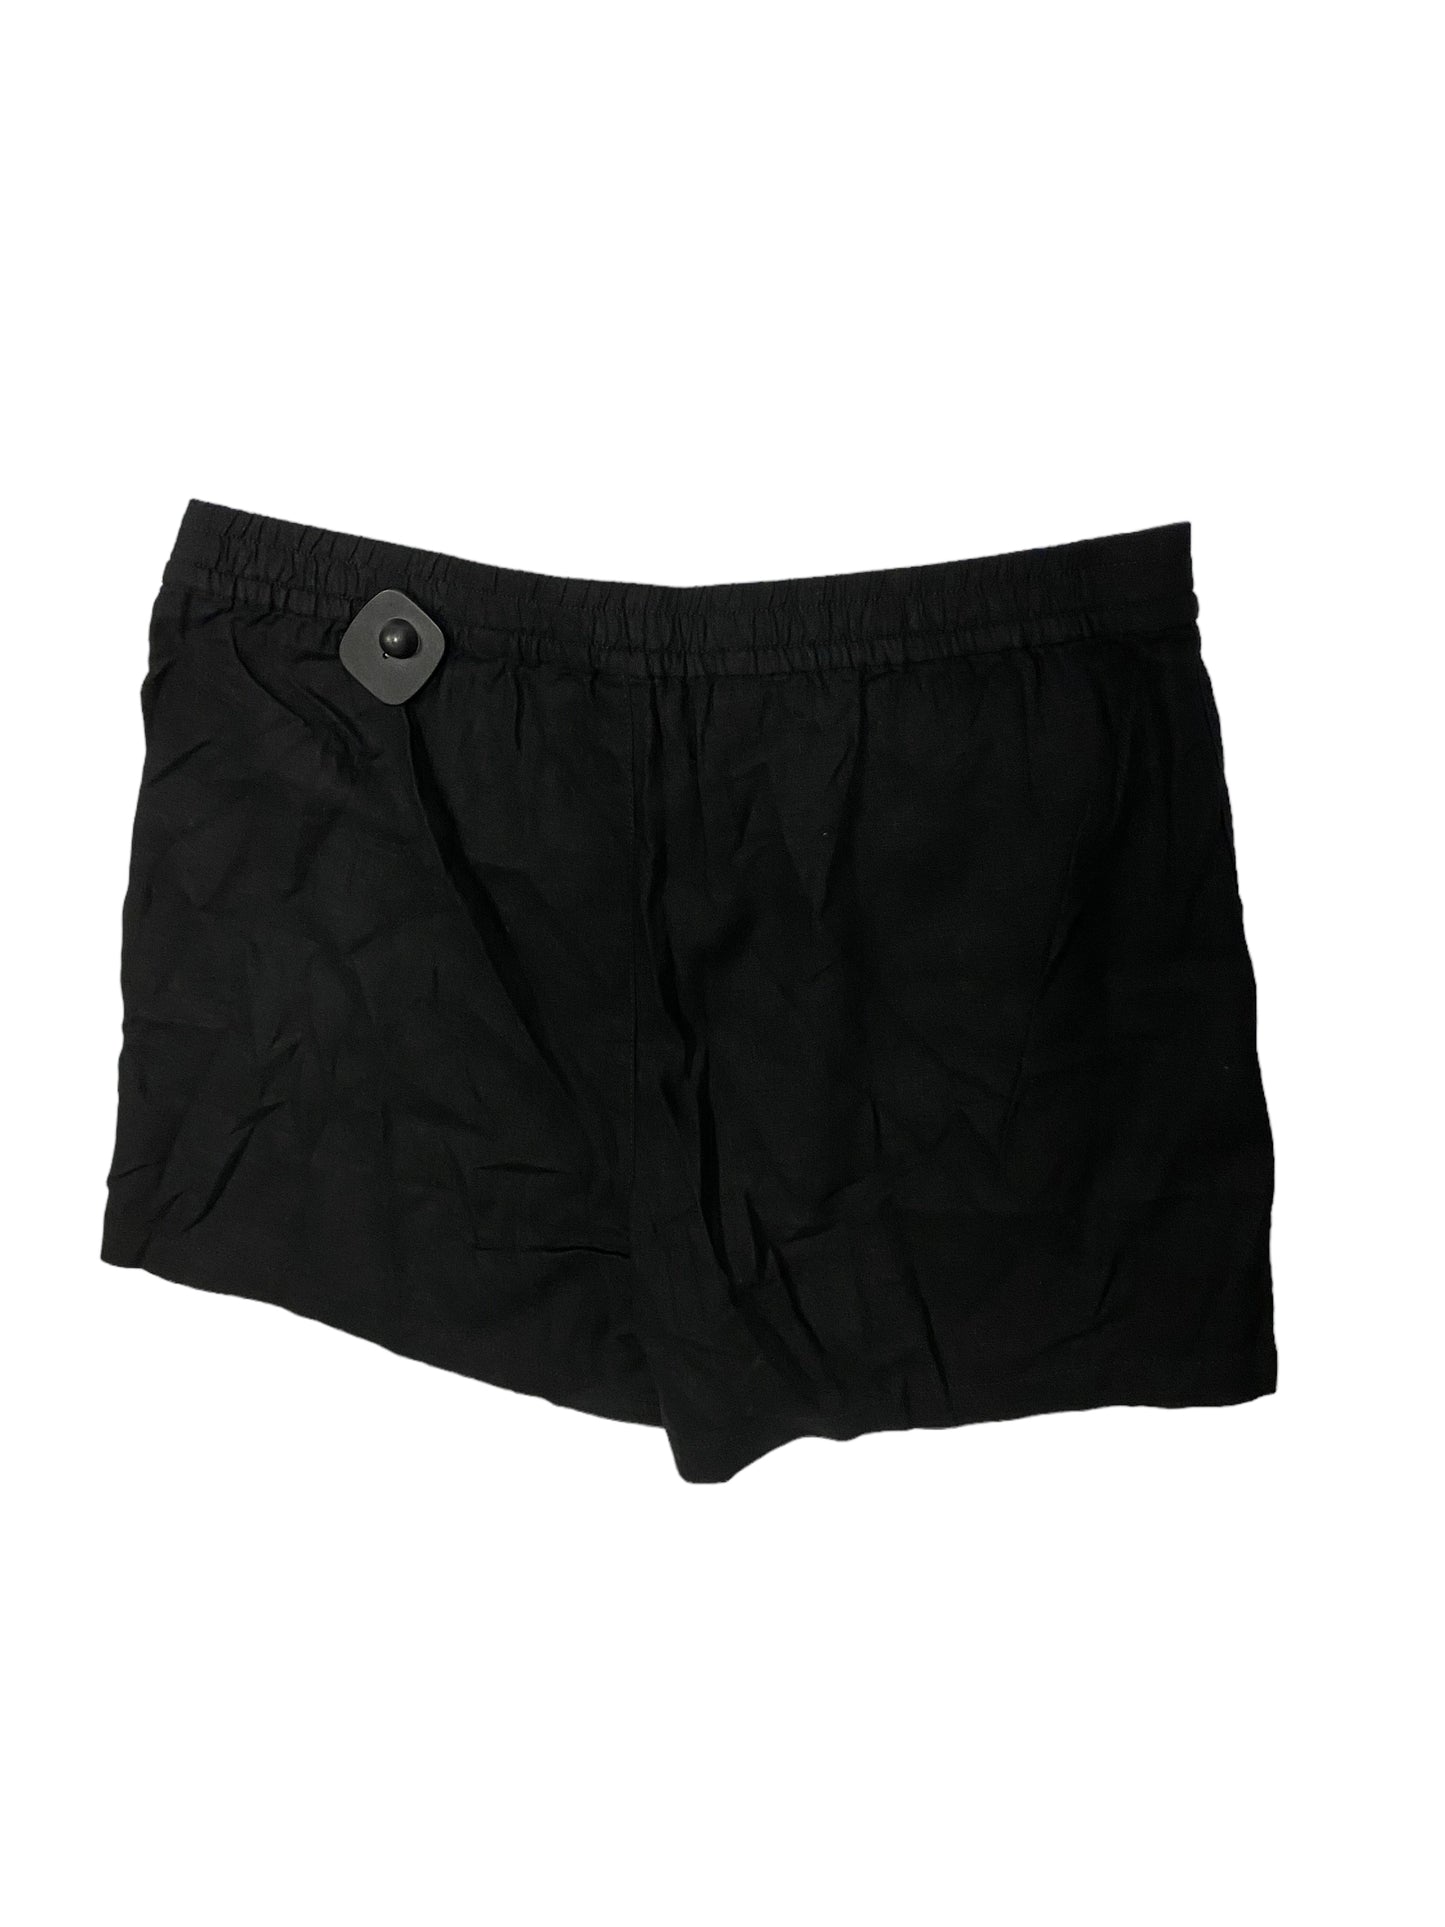 Black Shorts J. Crew, Size L